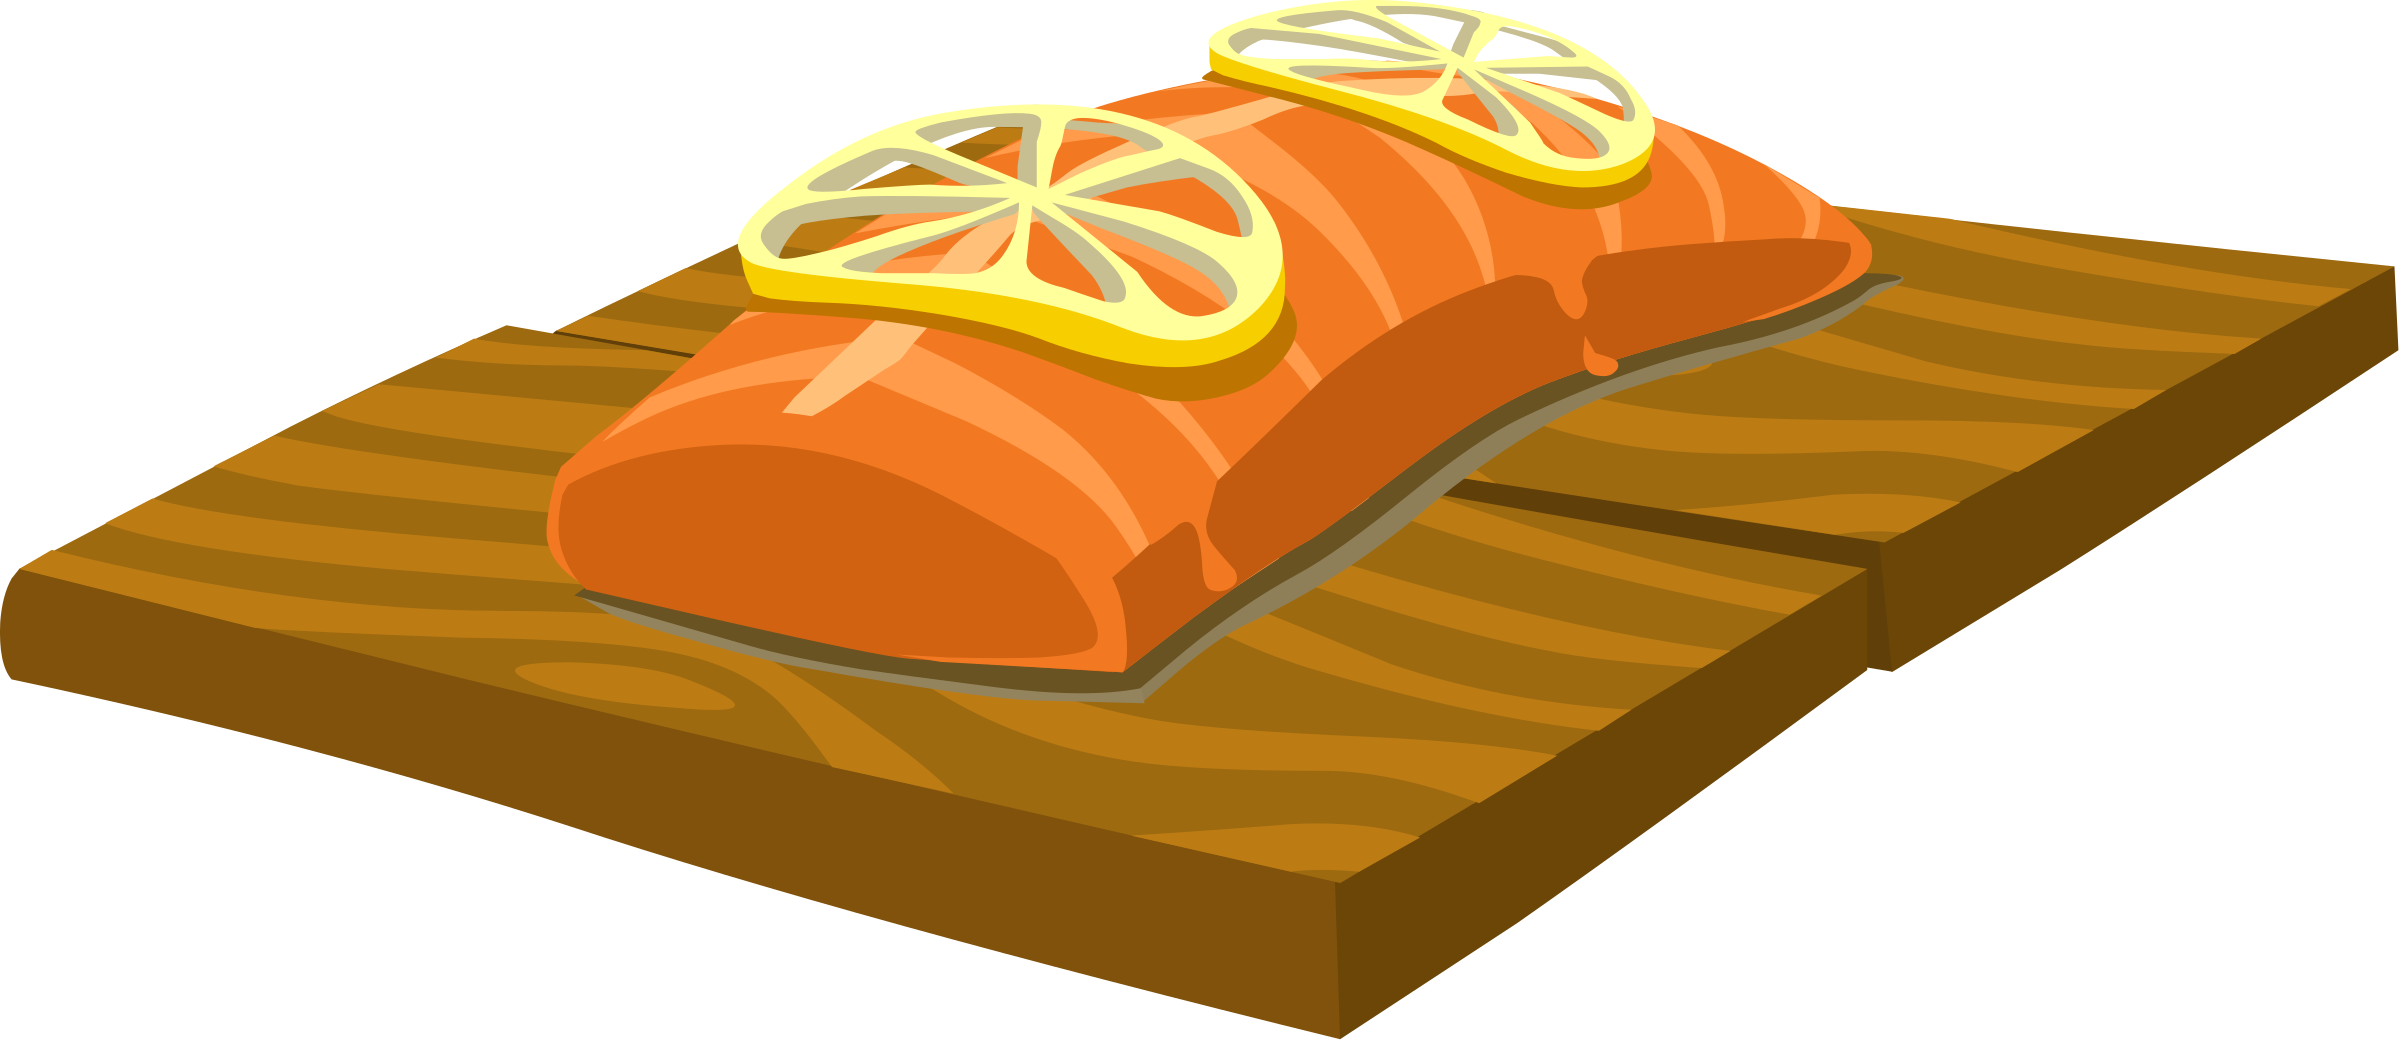 Food Cedar Plank Salmon By Glitch